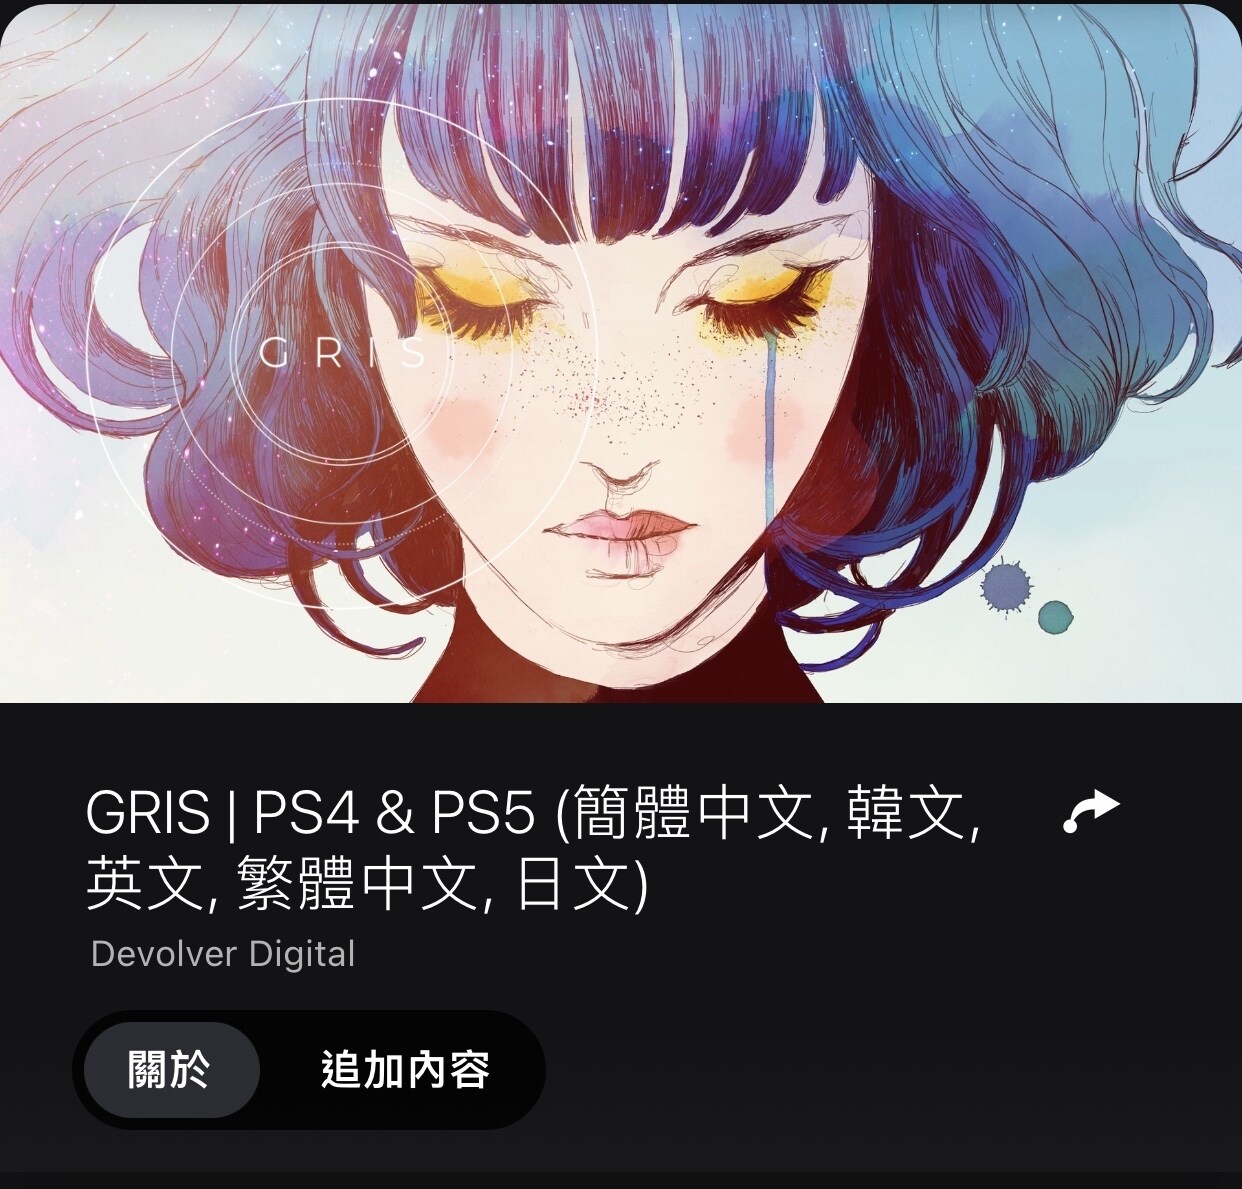 雙人成行》PS4™ & PS5™ (簡體中文, 韓文, 英文, 繁體中文, 日文)